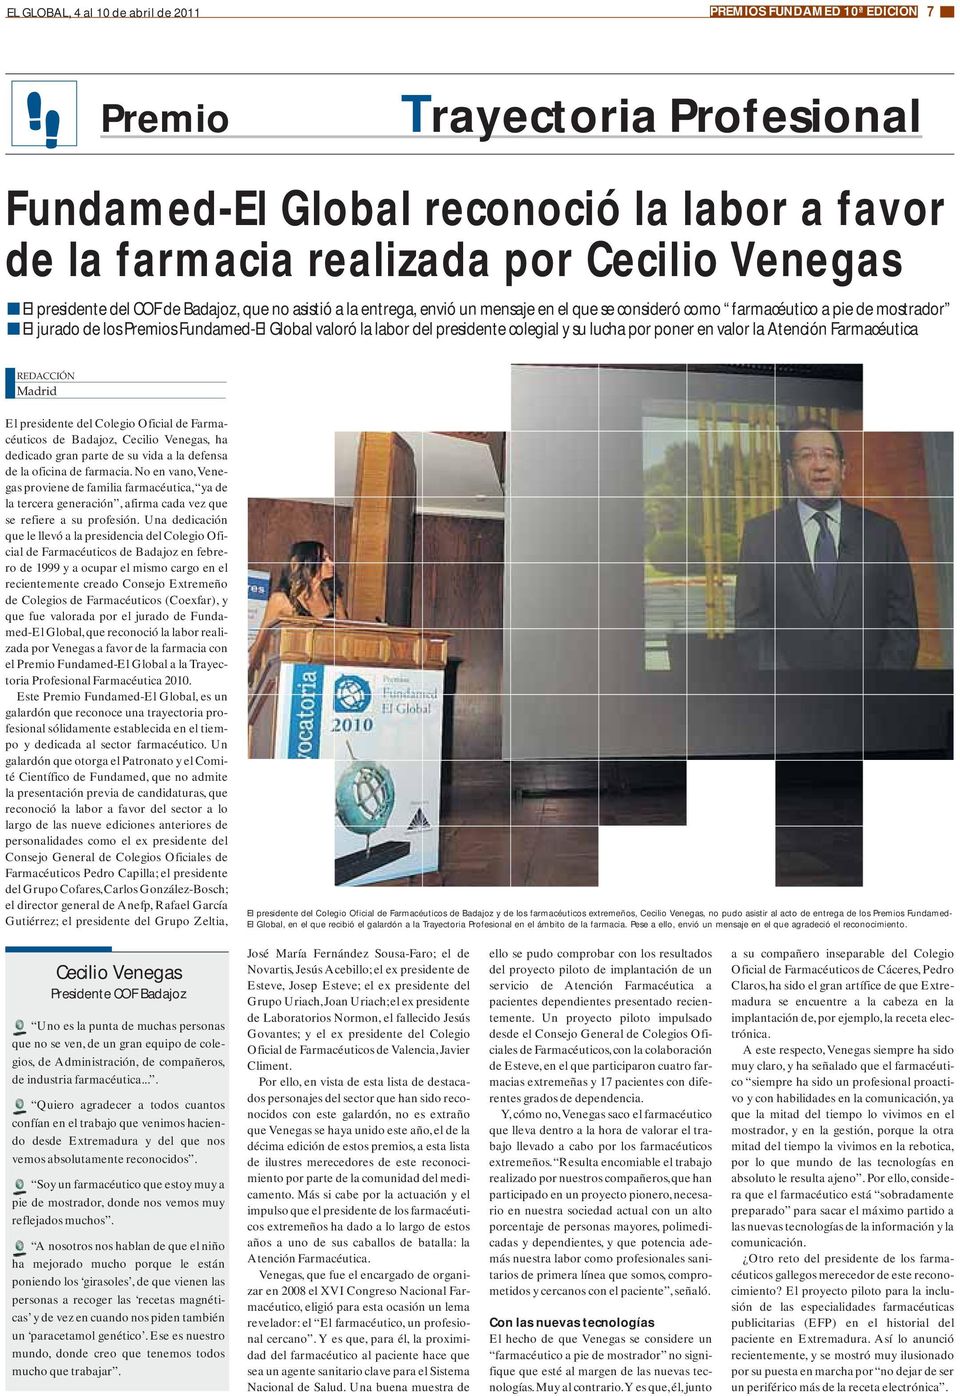 poner en valor la Atención Farmacéutica El presidente del Colegio Oficial de Farmacéuticos de Badajoz, Cecilio Venegas, ha dedicado gran parte de su vida a la defensa de la oficina de farmacia.